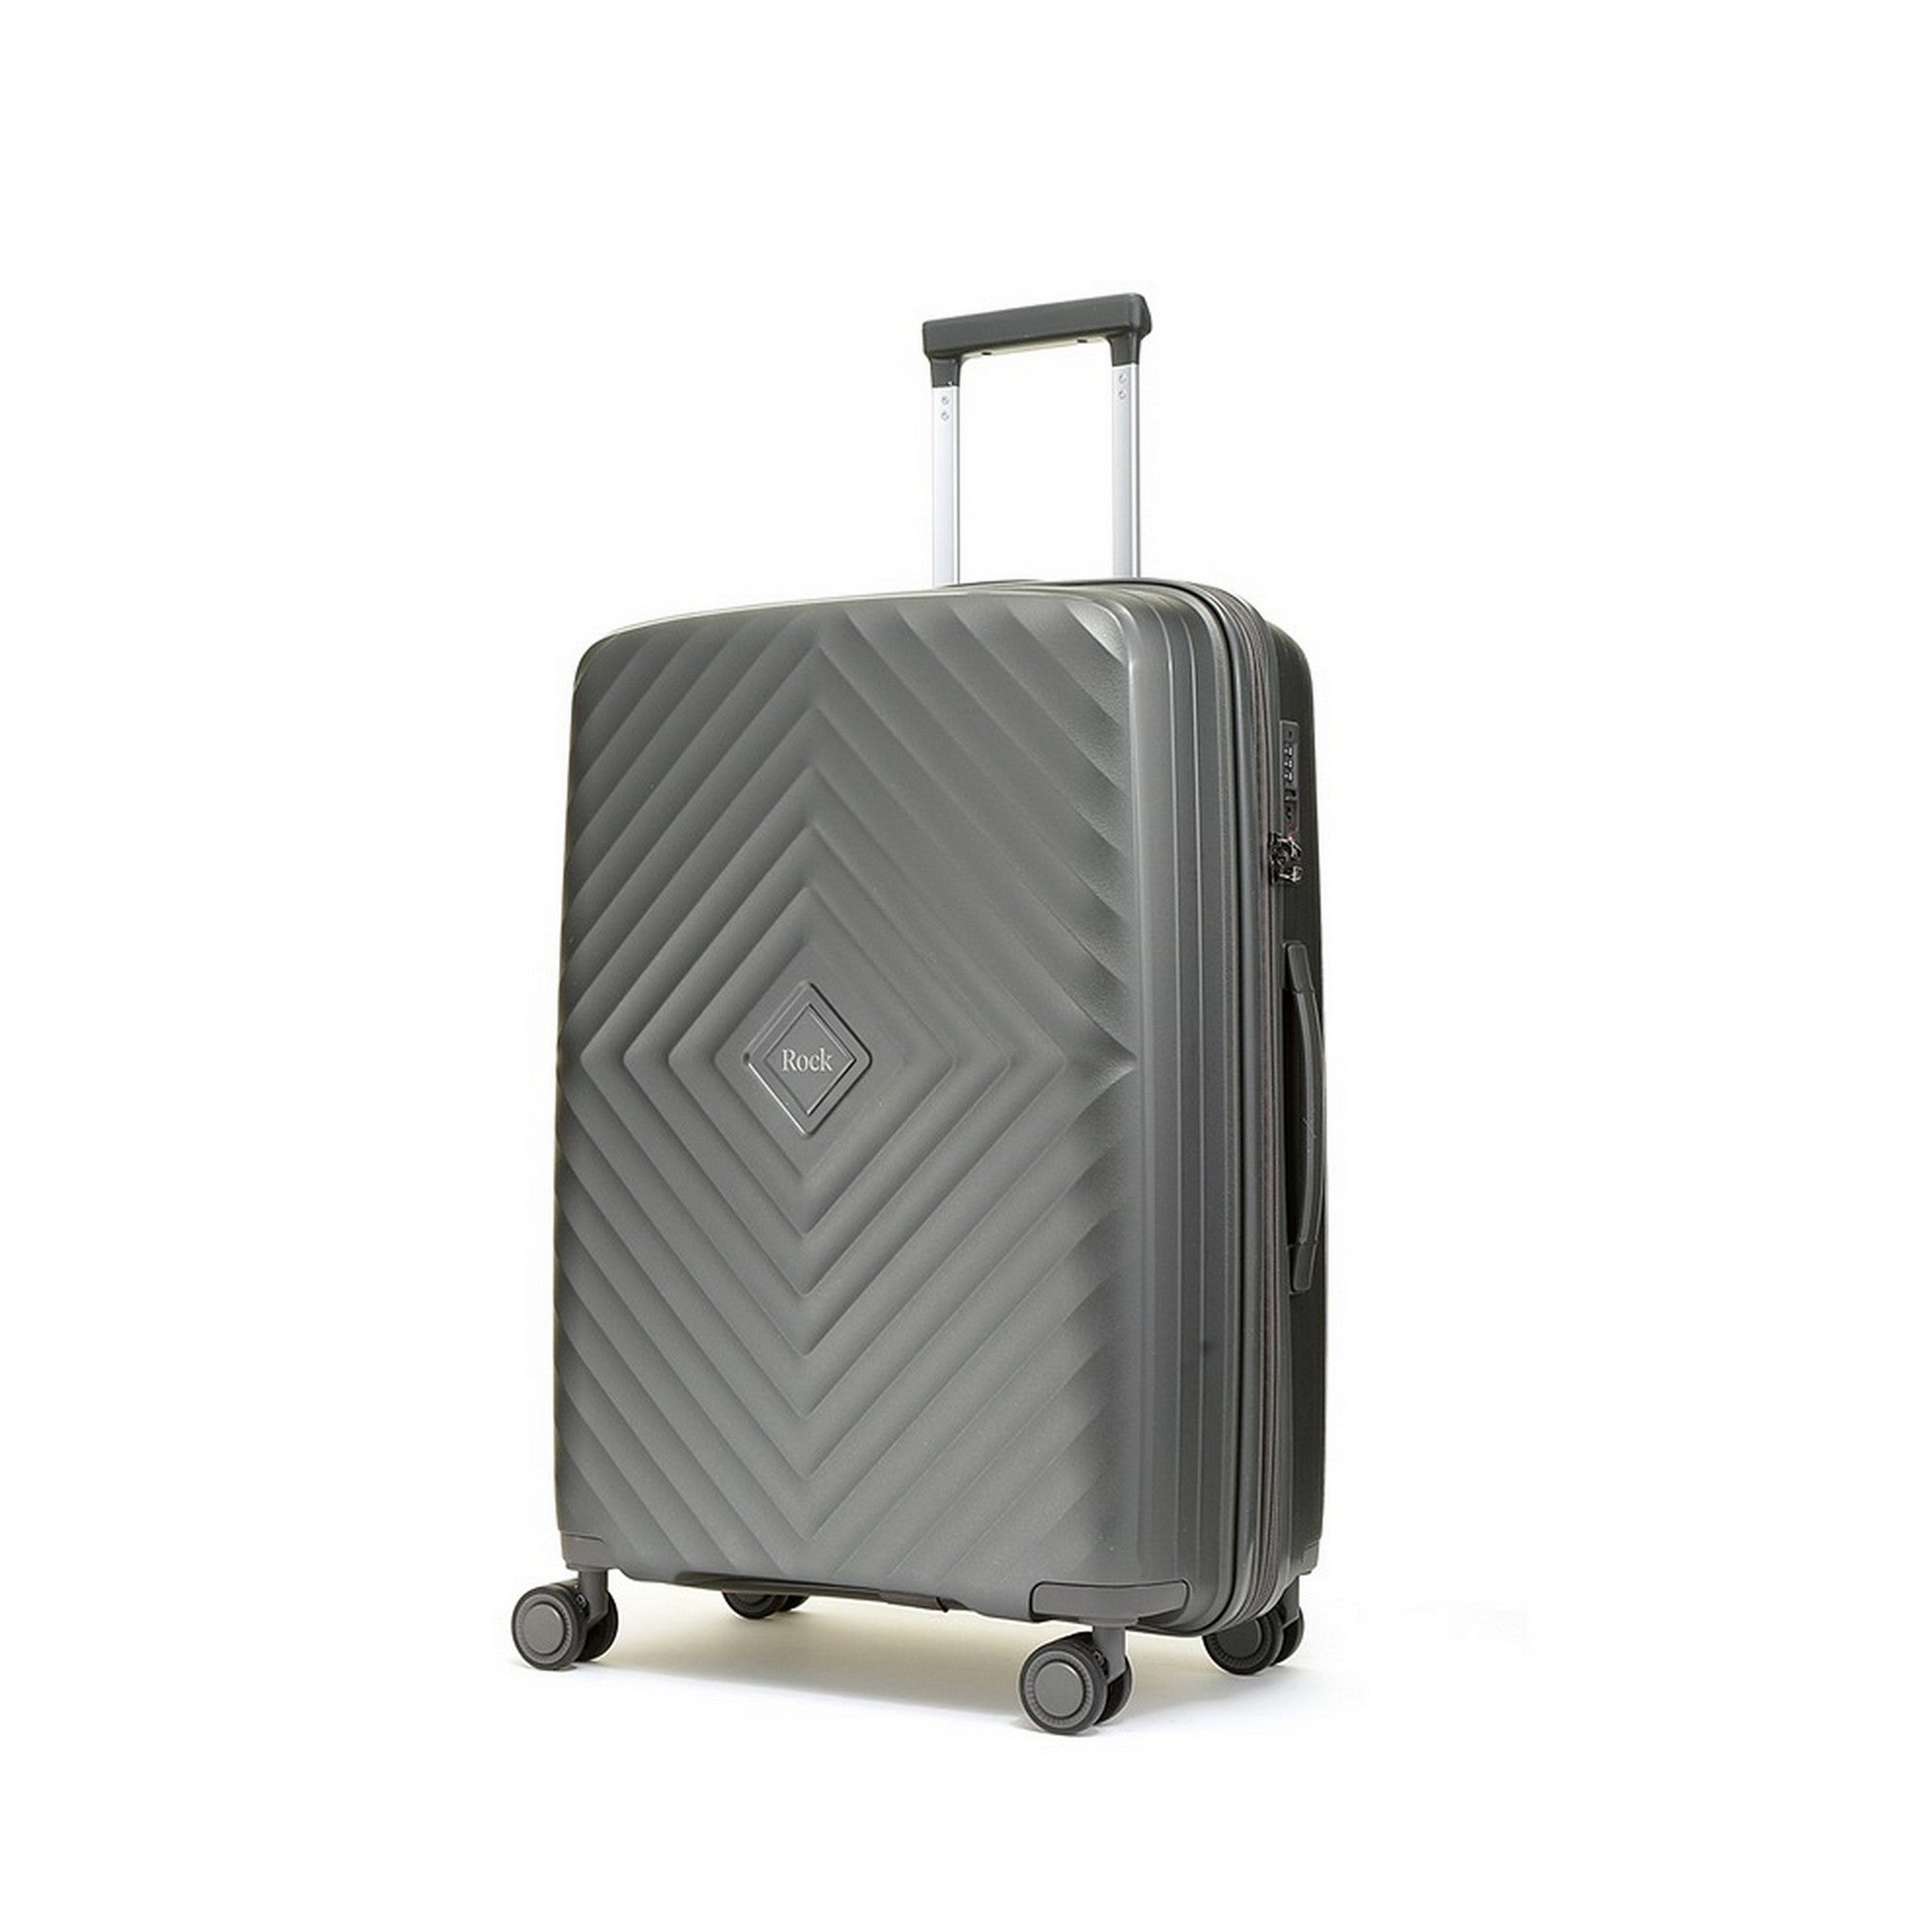 Rock Luggage Infinity Suitcase Charcoal